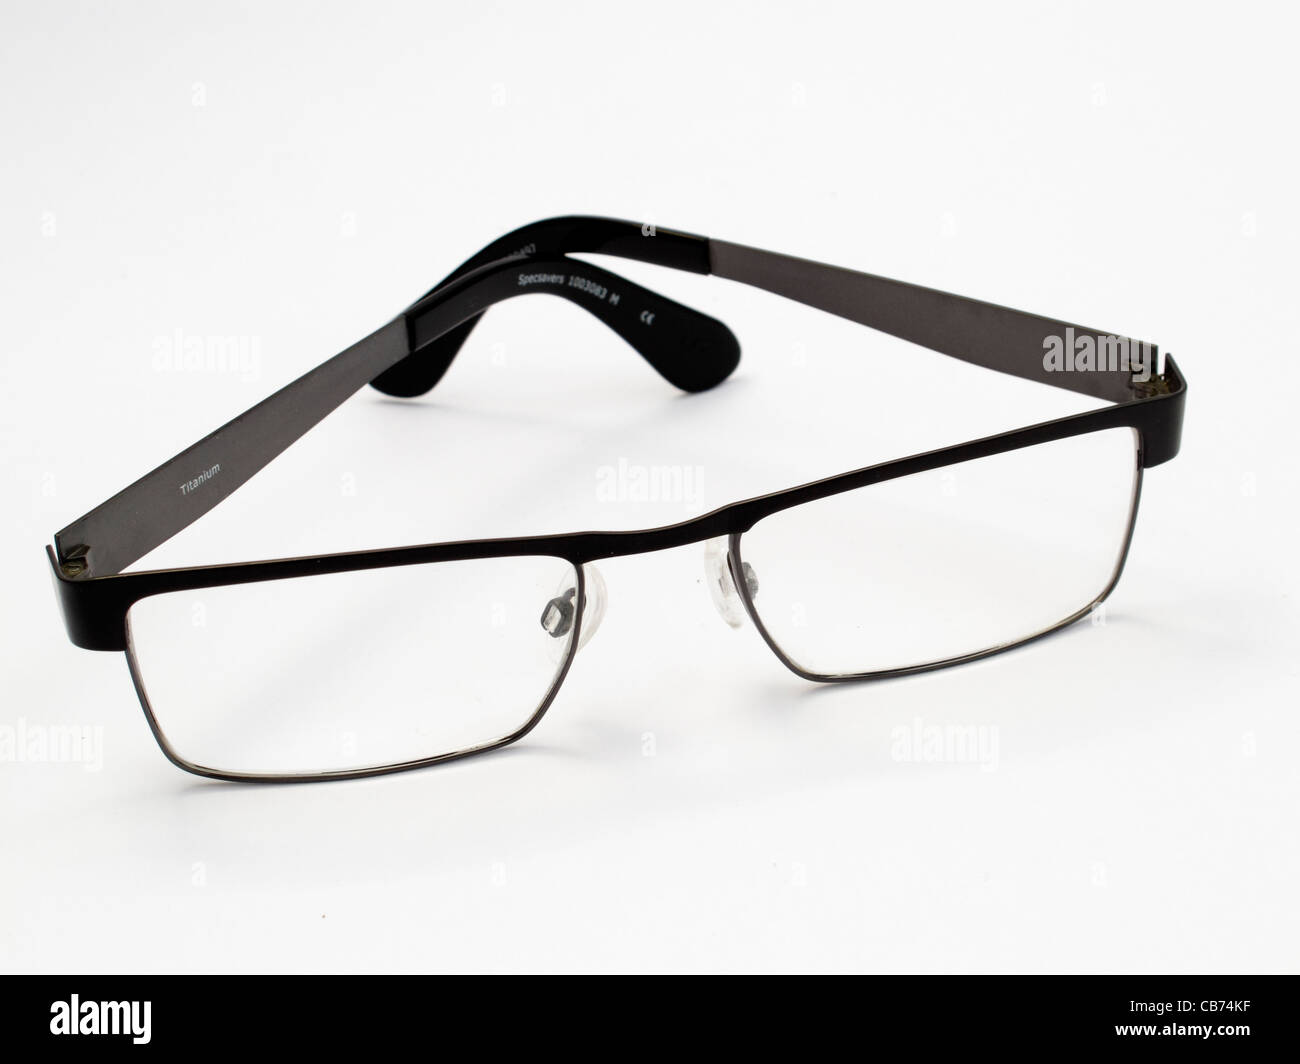 Mannes berufliche Vario Brille modernes Design schwarz Titanrahmen auf weißem Hintergrund Stockfoto